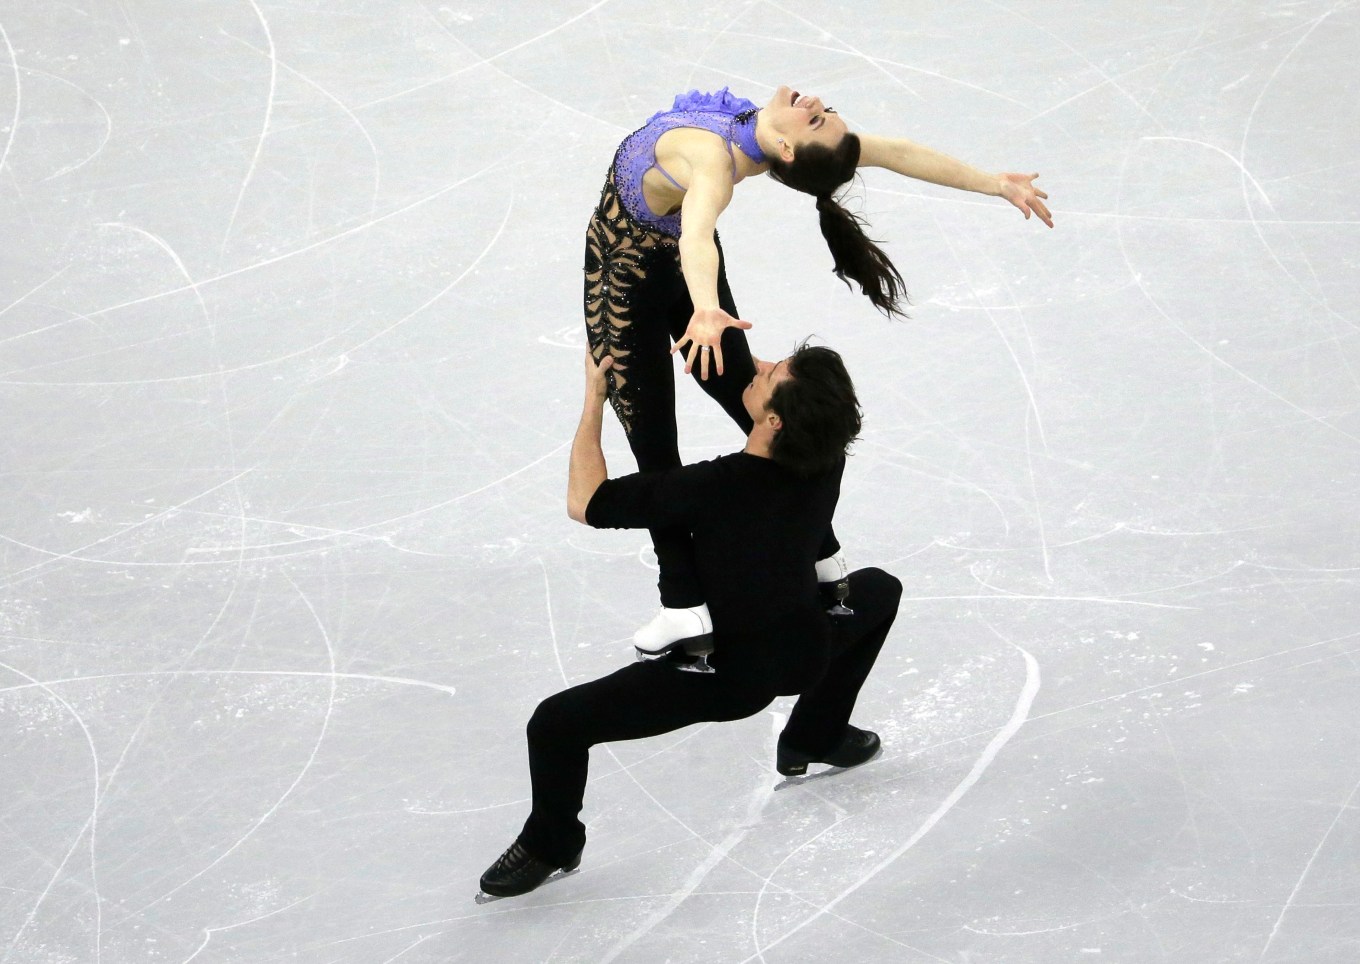 Les Canadiens Tessa Virtue et Scott Moir lors du programme court la glace du programme court aux Championnats des quatre continents à Gangneung, en Corée du Sud, le 17 février 2017. (AP Photo/Ahn Young-joon)